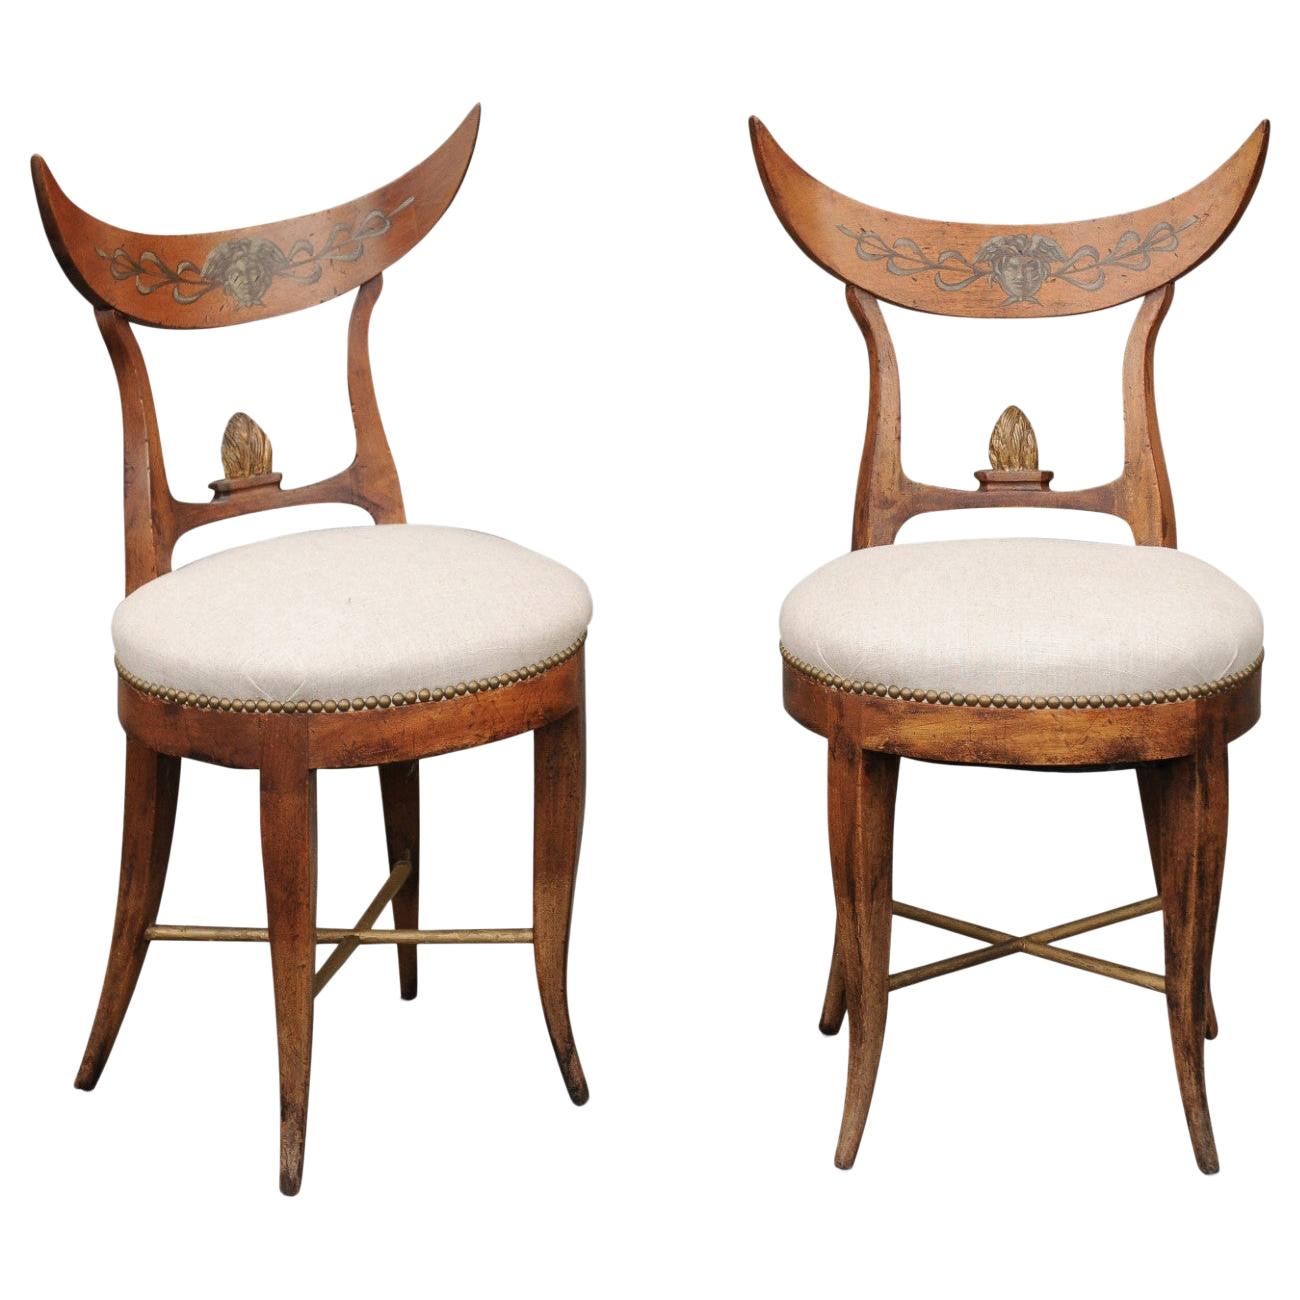 Paar italienische gepolsterte Beistellstühle aus den 1860er Jahren mit halbmondförmigen Rückenlehnen und Säbelbeinen